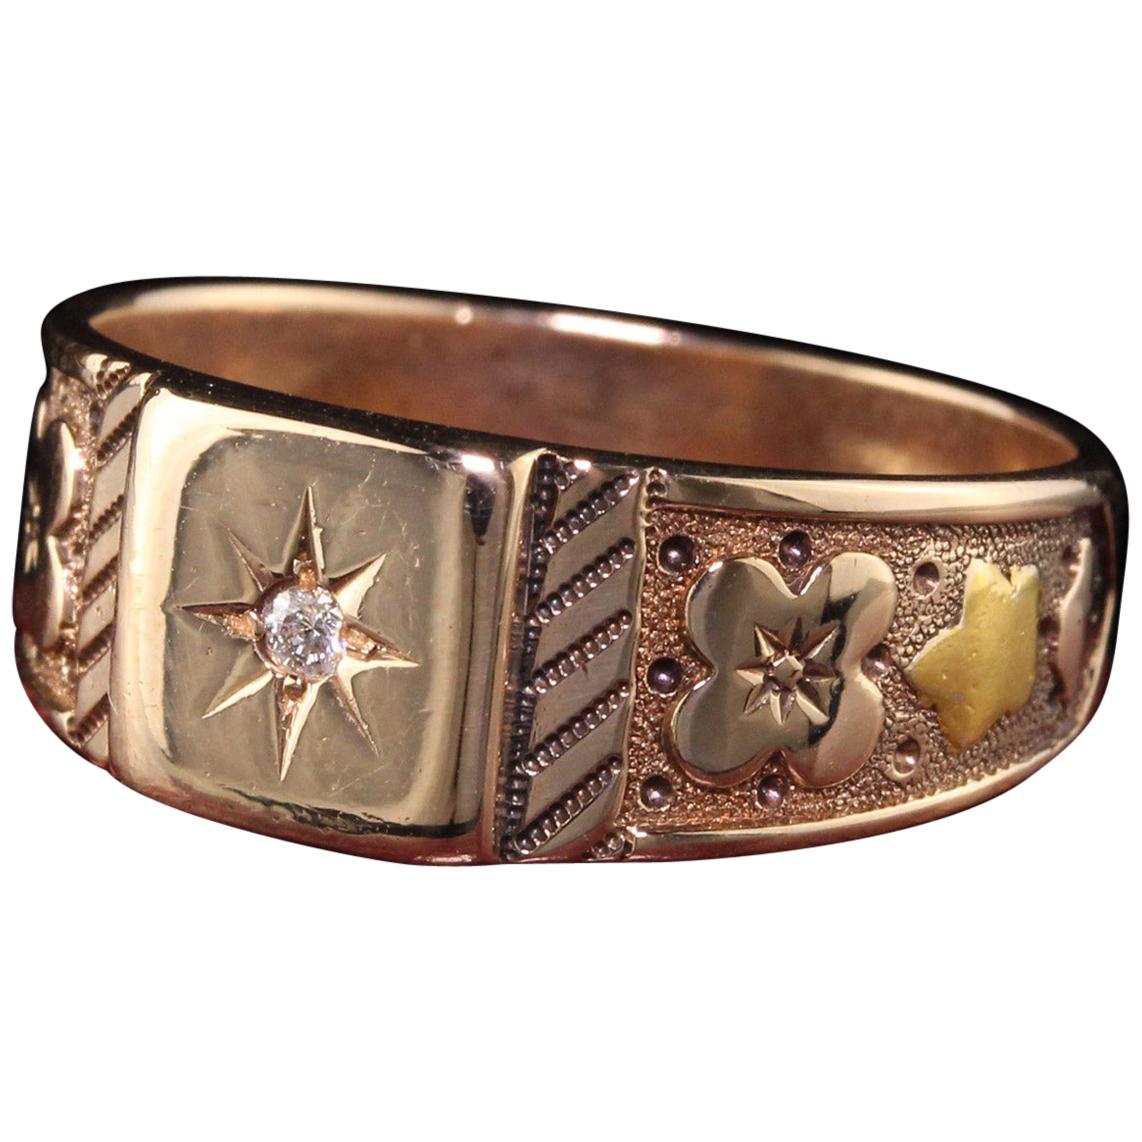 Antique Victorian 14 Karat Rose Gold Engraved Diamond Band Ring